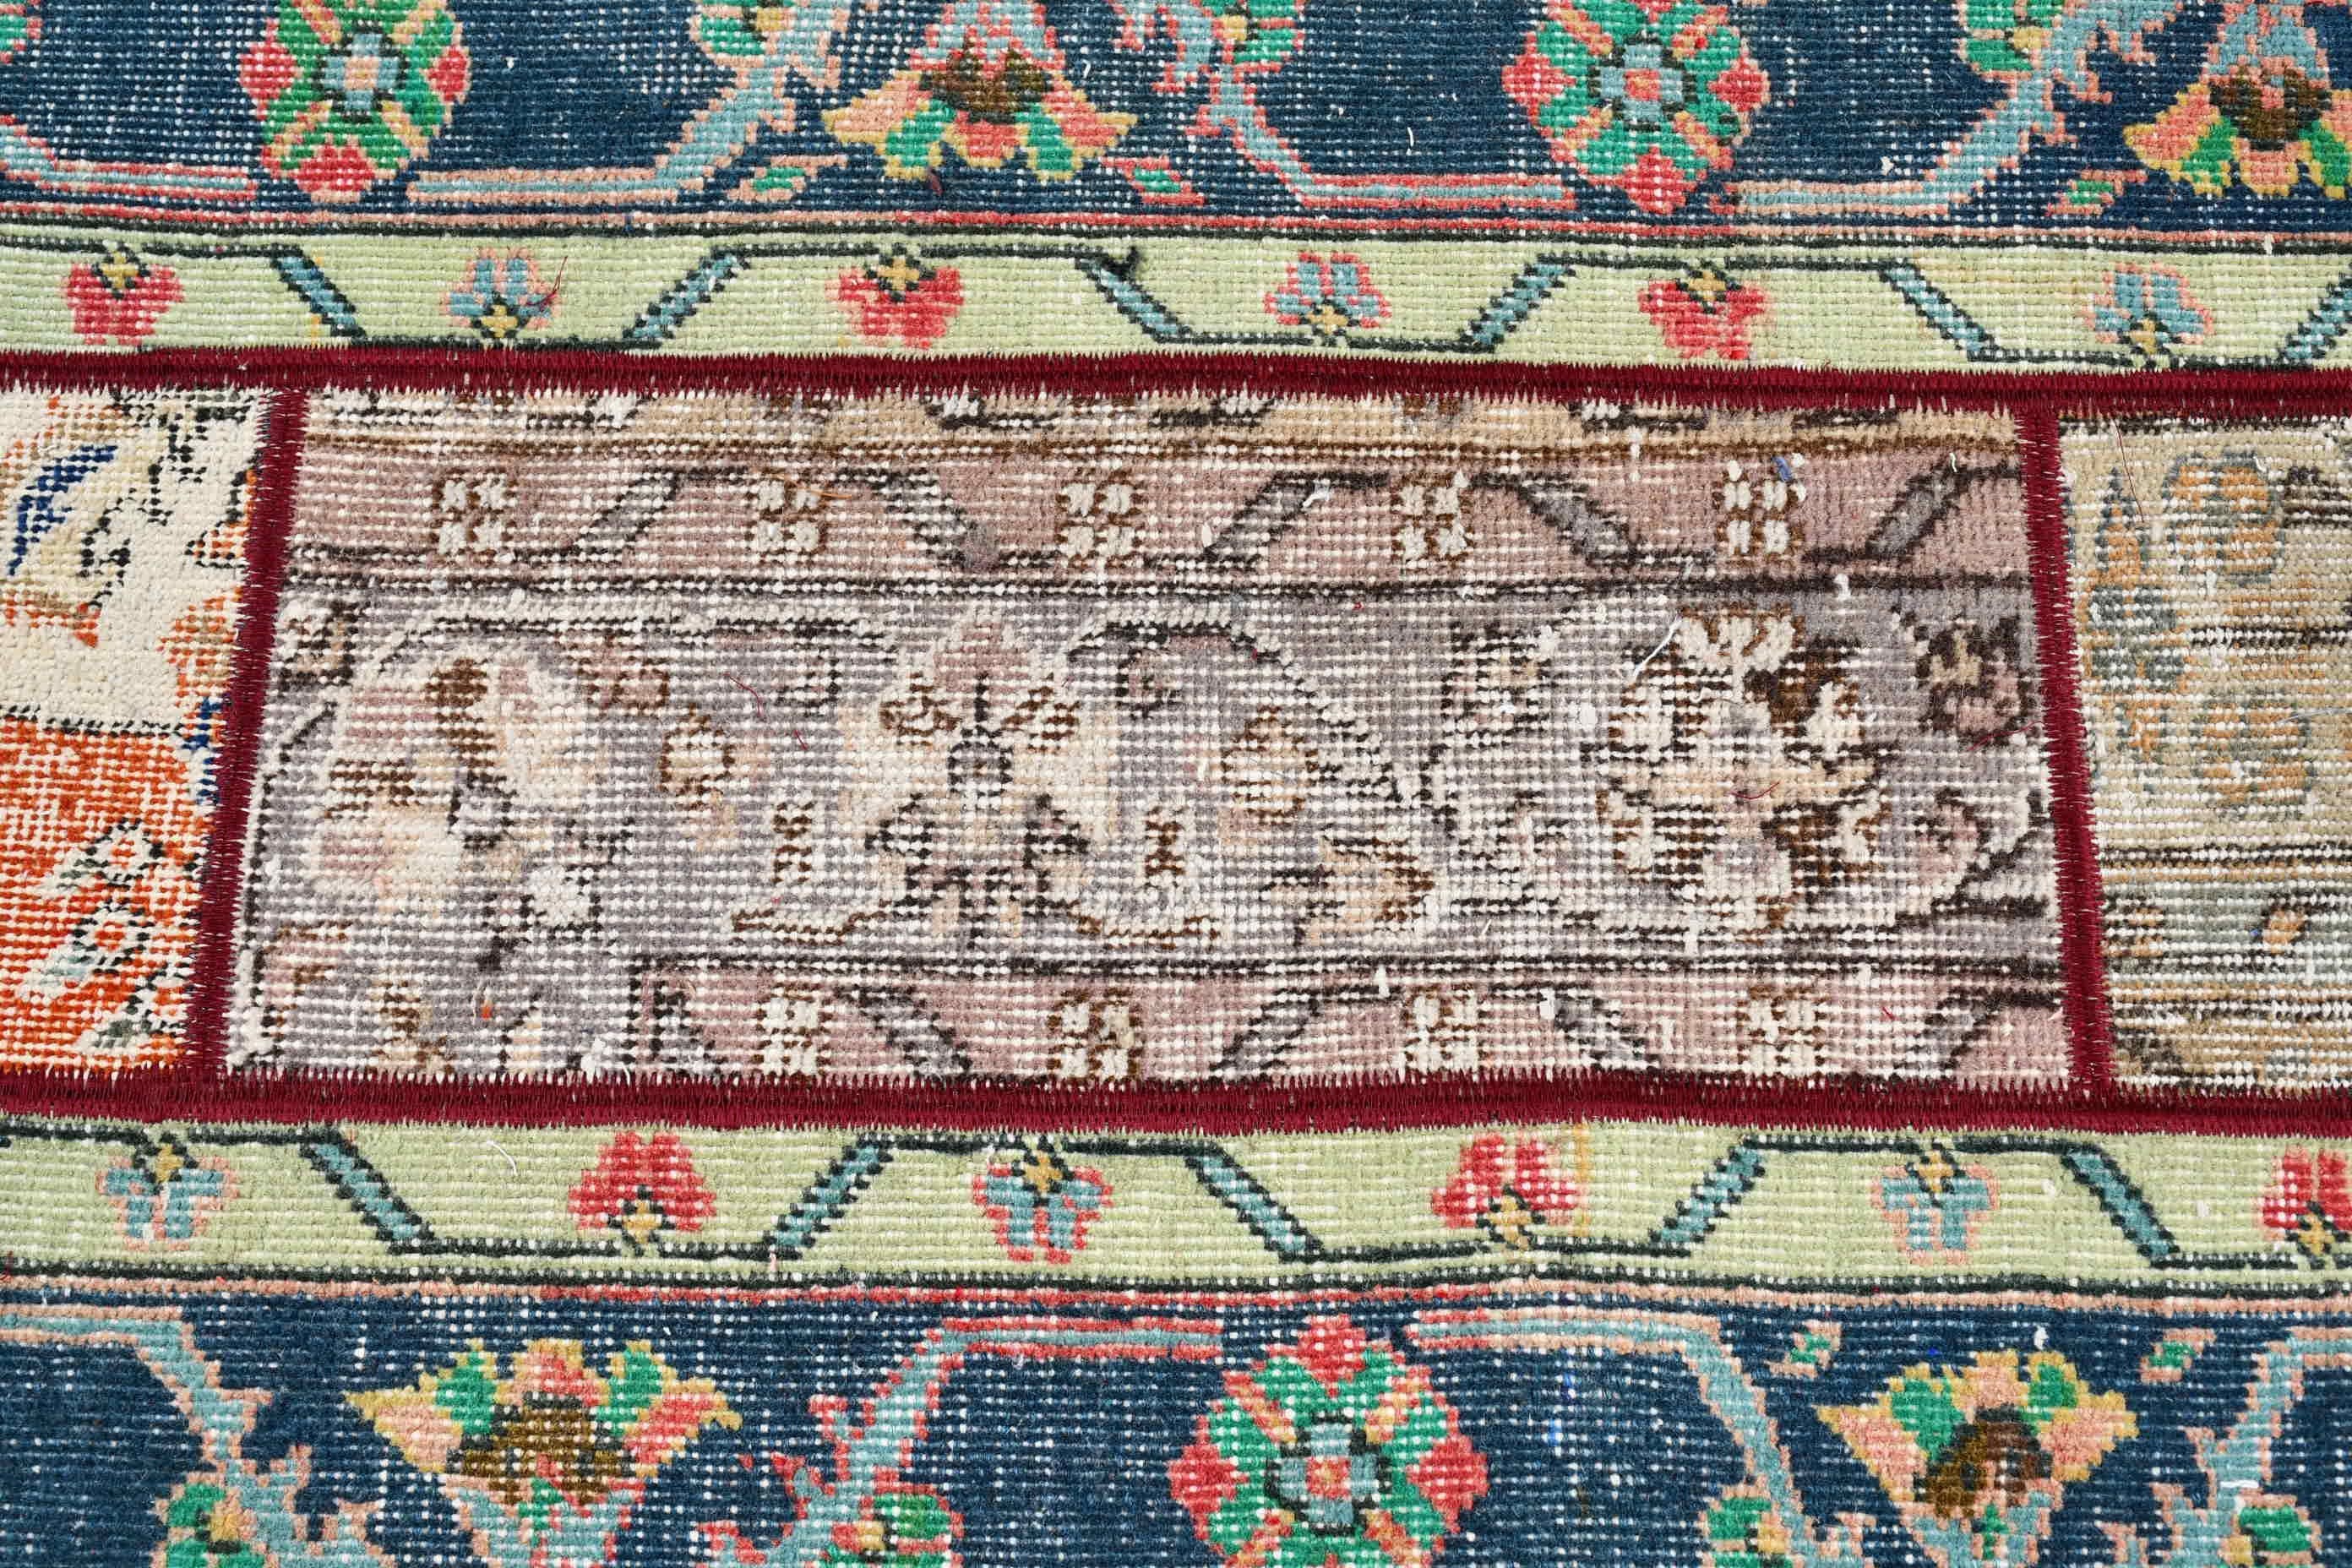 Bedroom Rugs, Turkish Rugs, Retro Rugs, Vintage Rug, Kitchen Rug, Green Anatolian Rug, Anatolian Rug, 2.1x11.5 ft Runner Rug, Corridor Rug